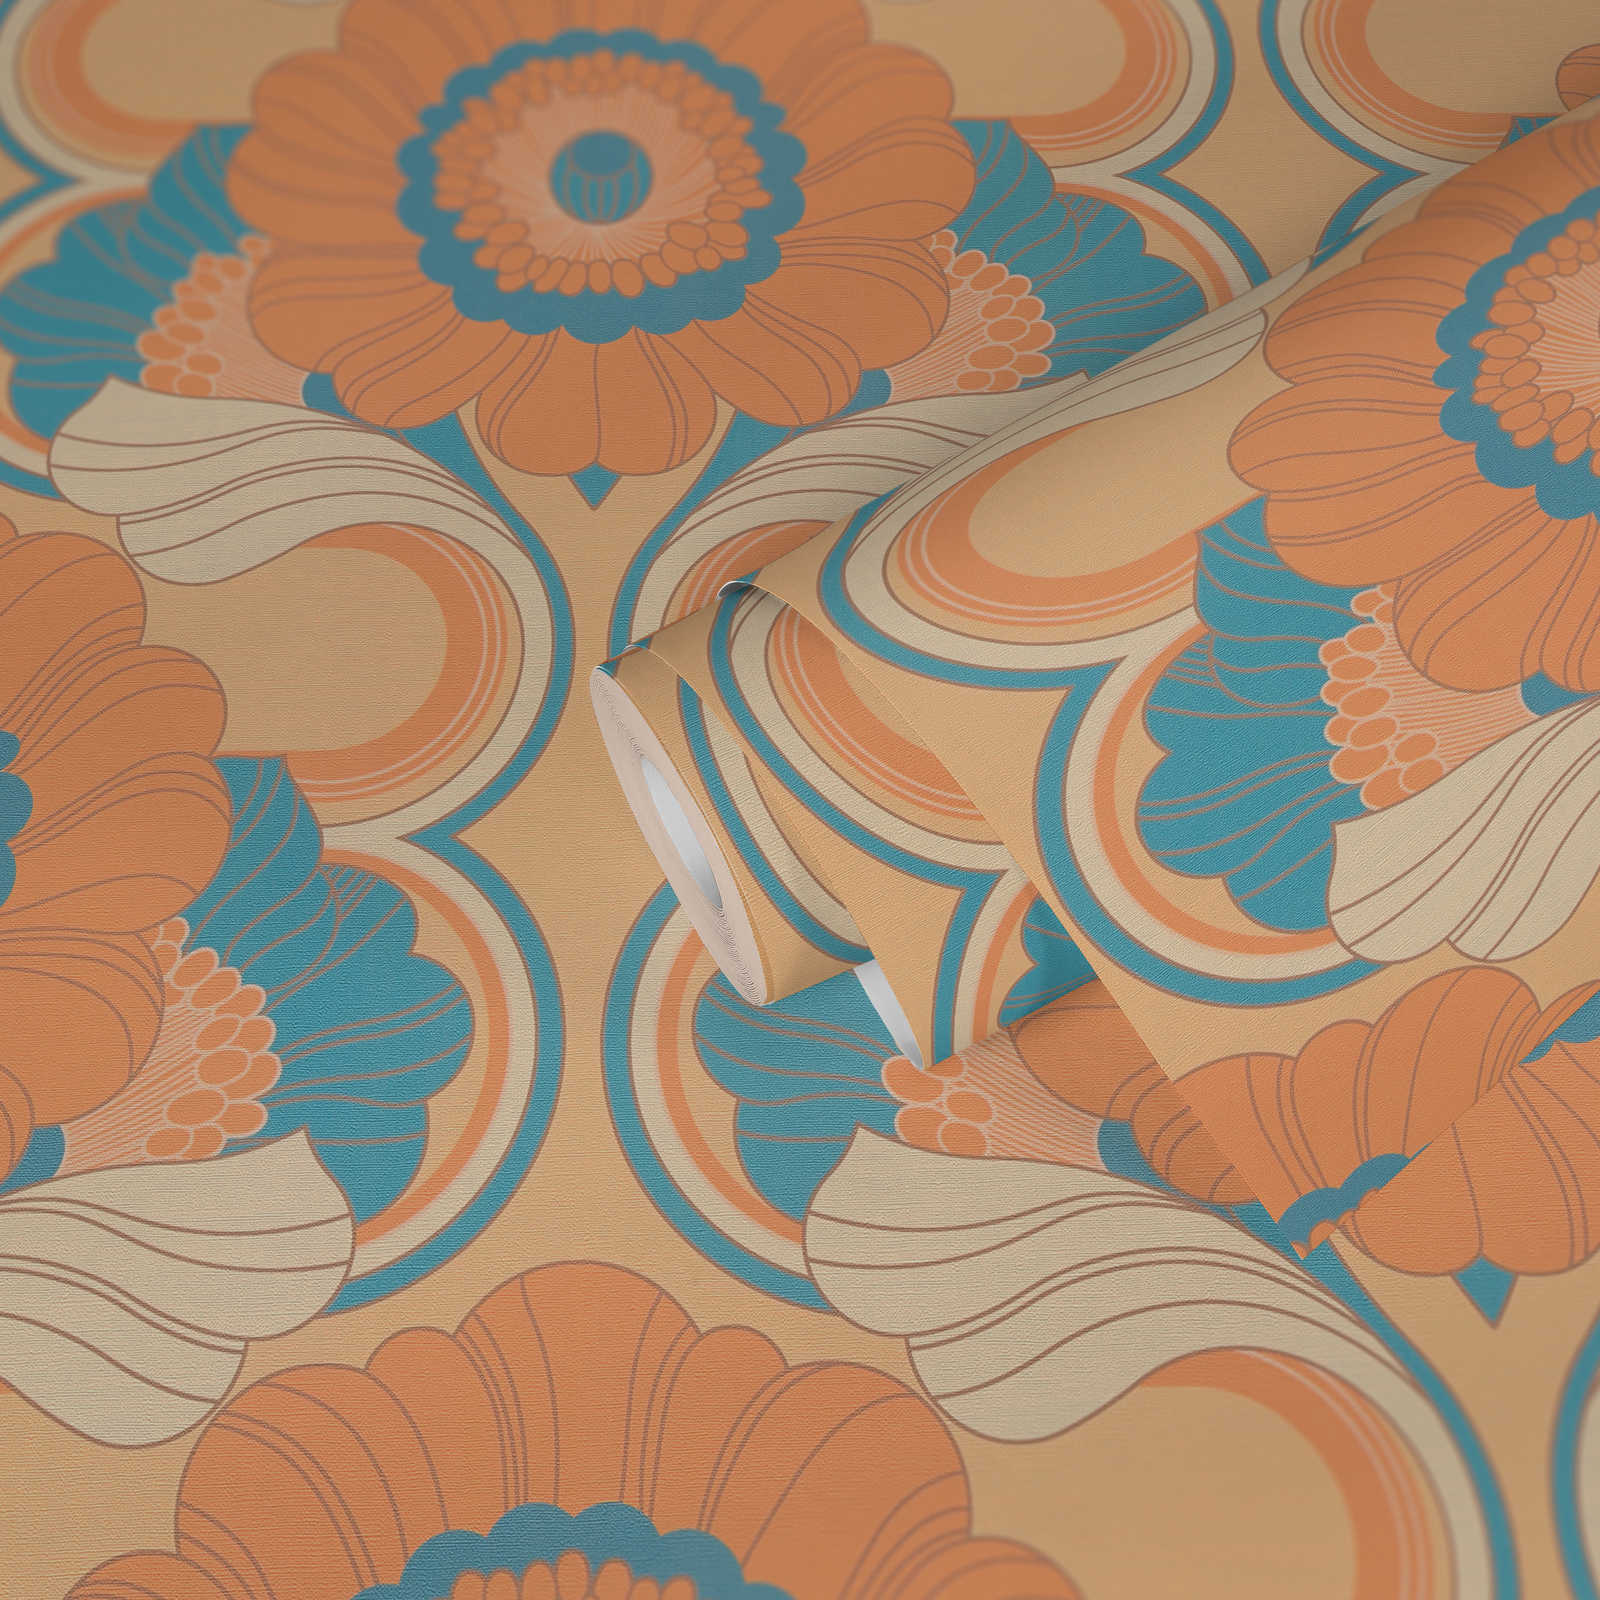             papier peint en papier intissé floral style rétro - beige, turquoise, orange
        